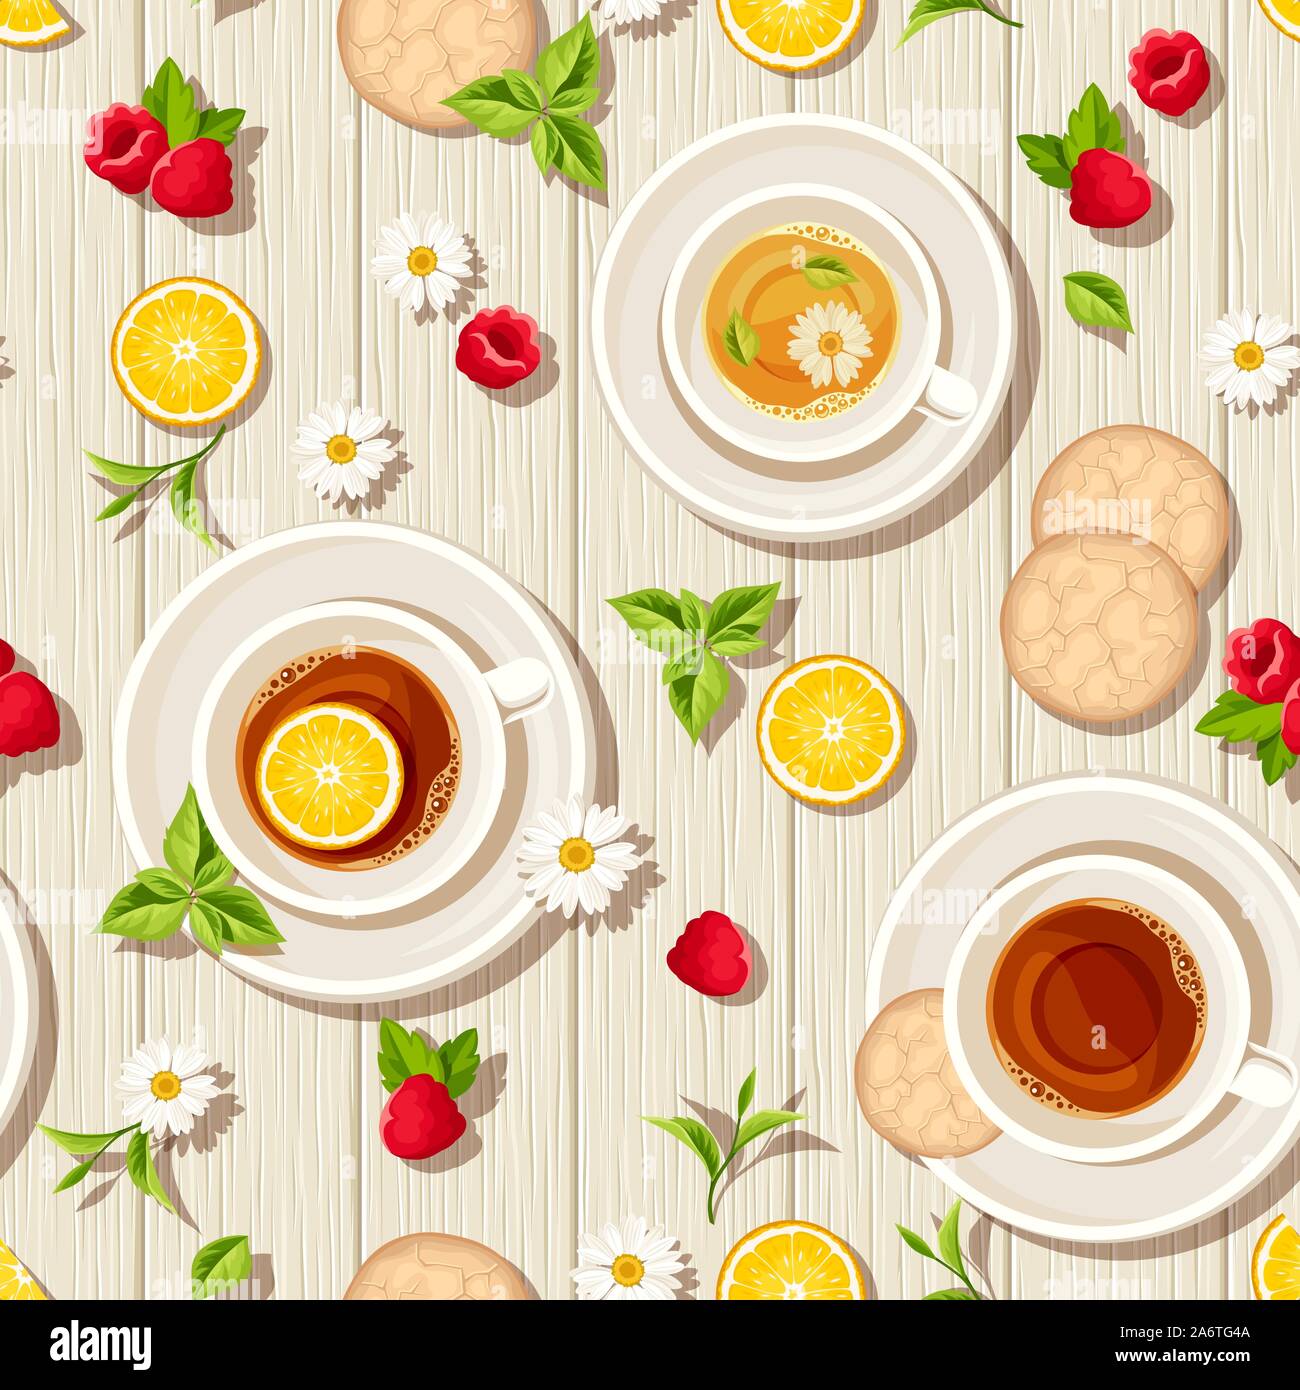 Vector patrón sin fisuras con tazas de té, galletas, limones, frambuesas y hojas sobre un fondo de madera. Ilustración del Vector